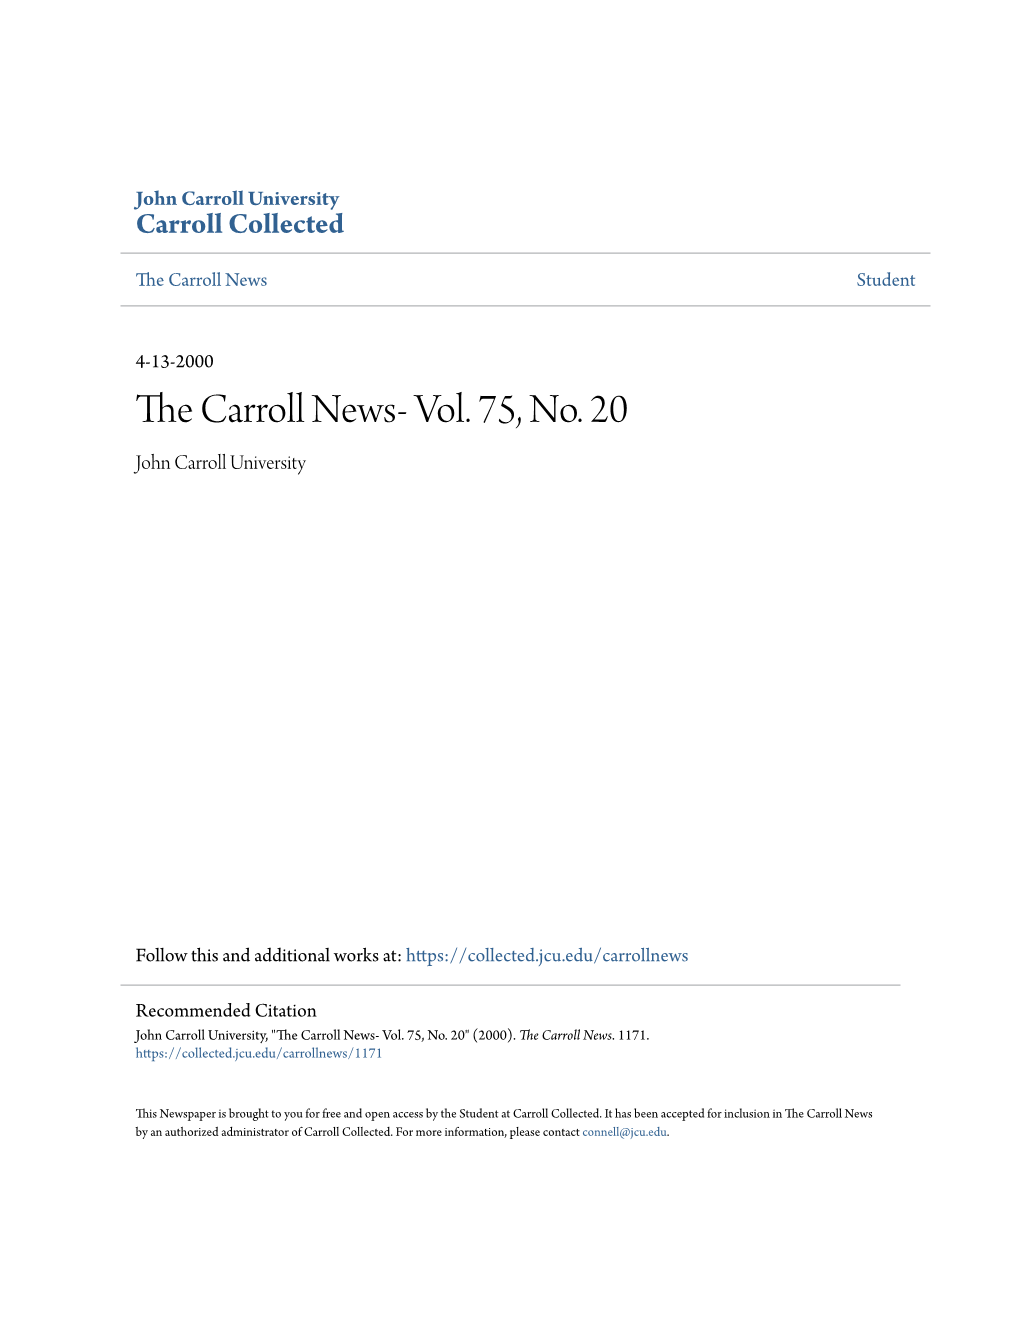 The Carroll News- Vol. 75, No. 20